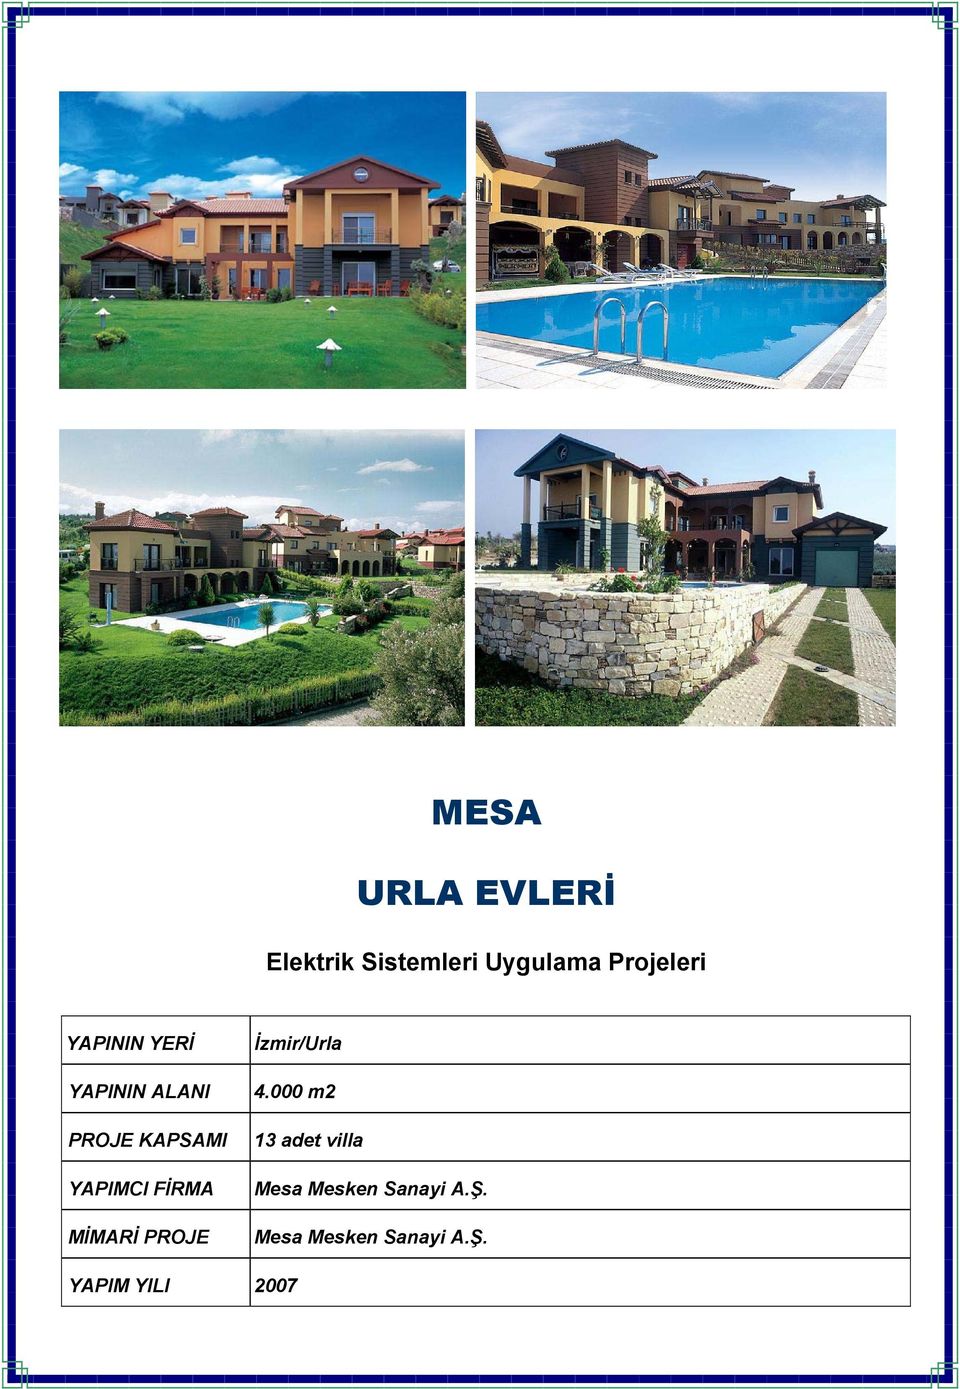 MİMARİ PROJE İzmir/Urla 4.